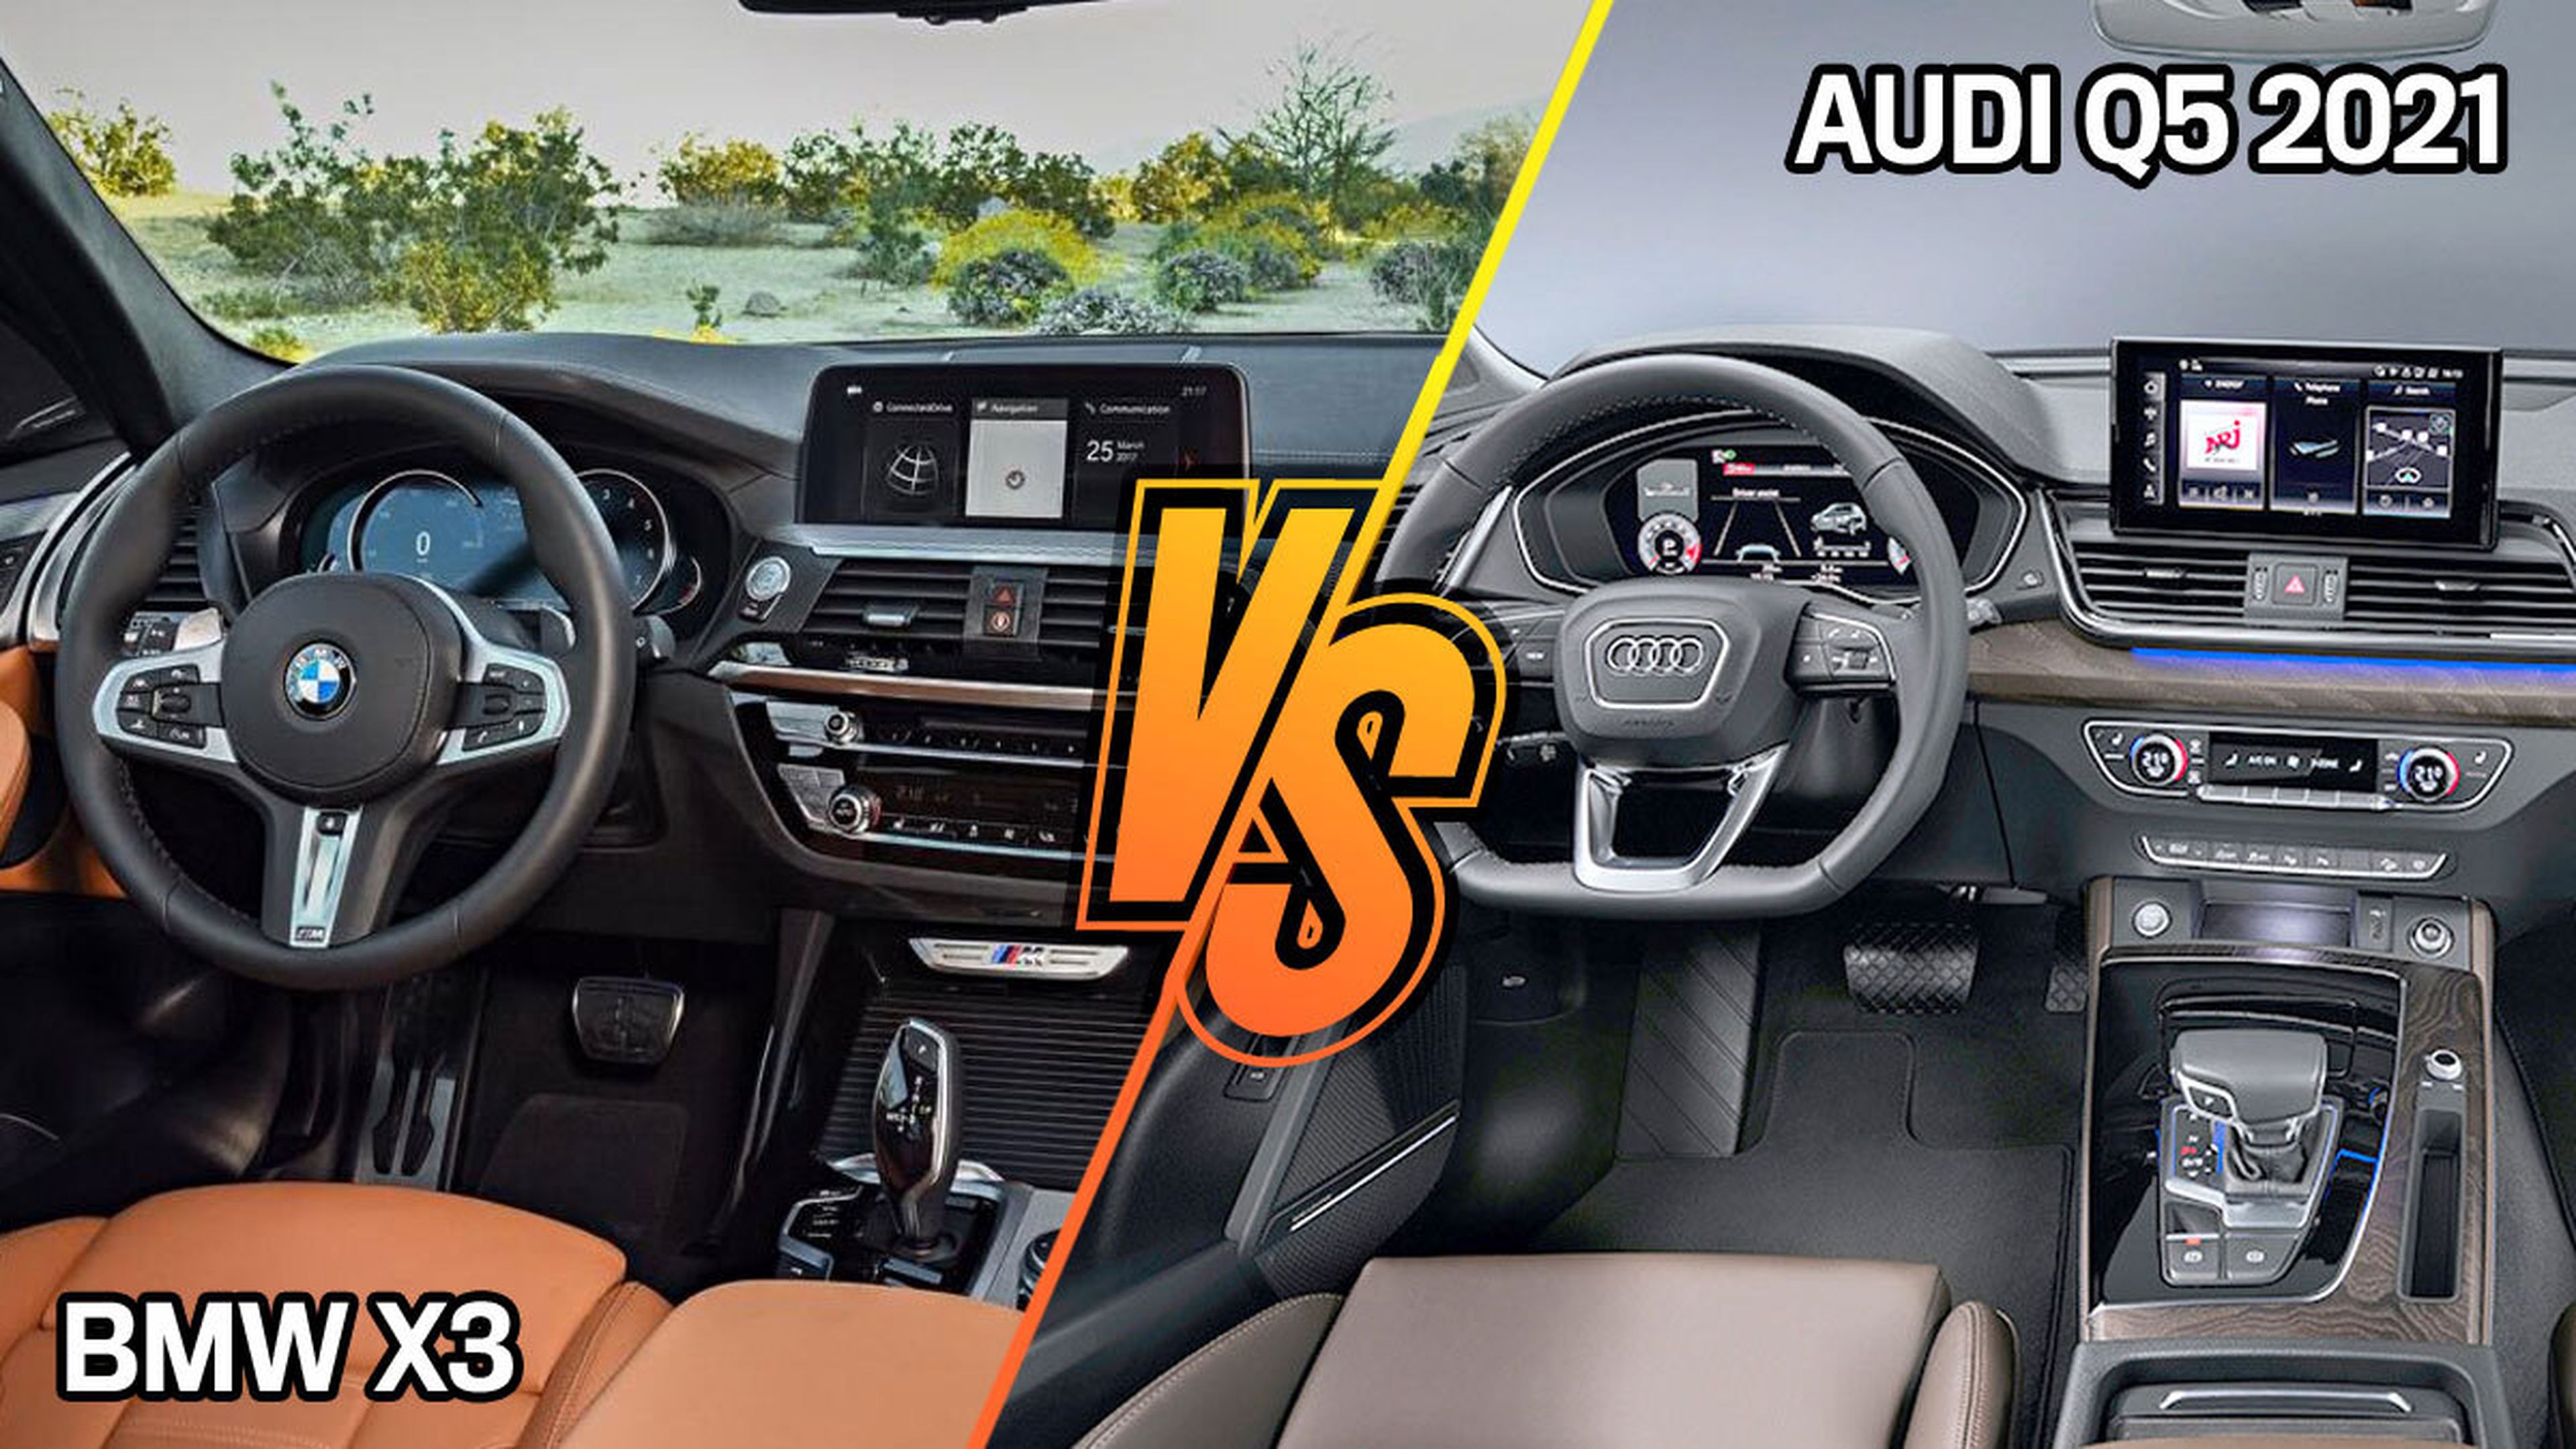 BMW X3 o Audi Q5 2021, ¿cuál tiene mejor interior?